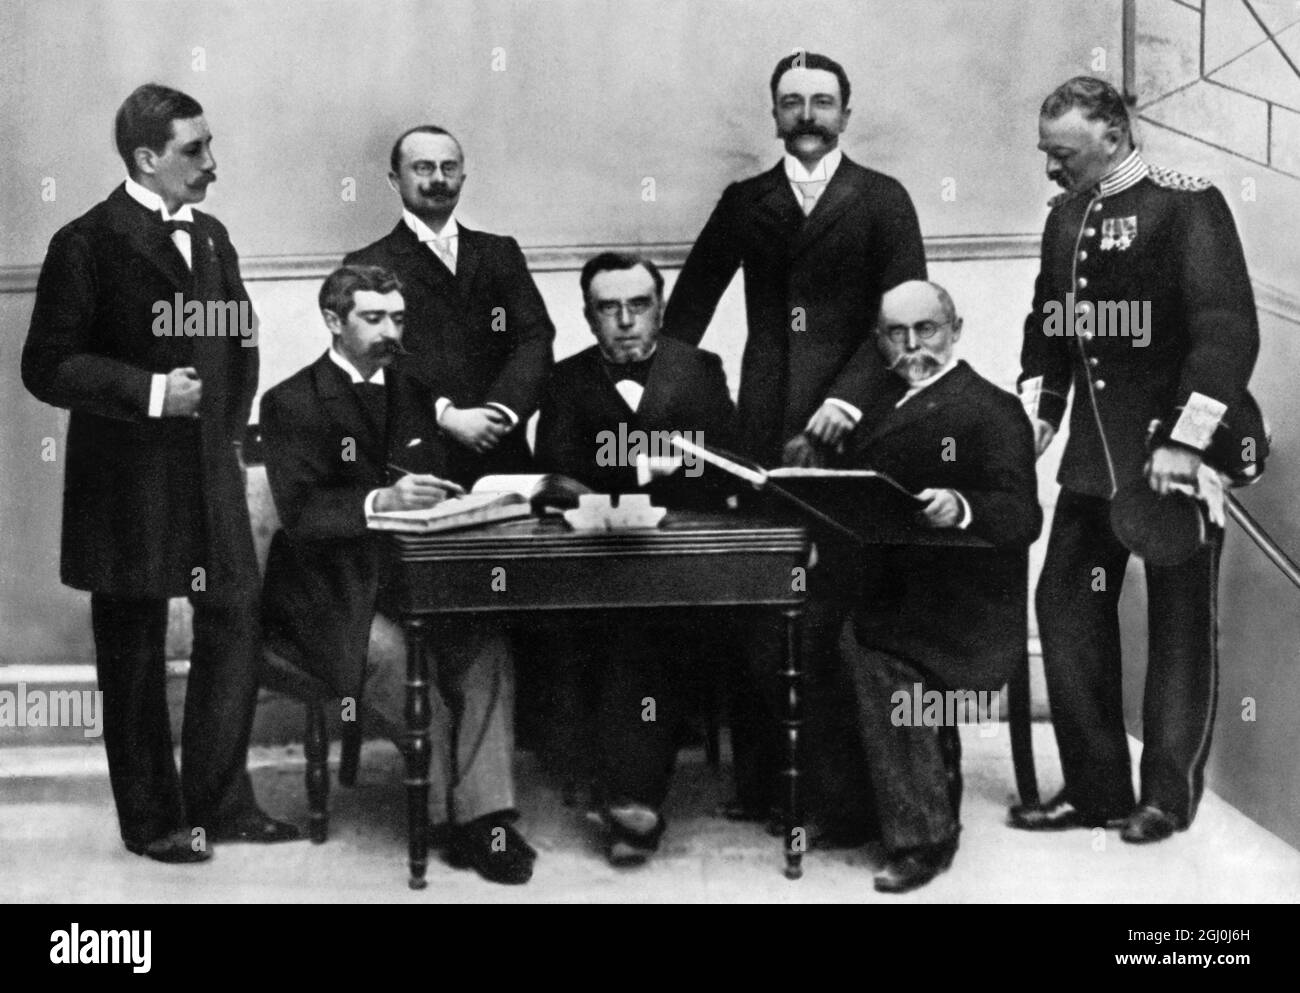 La première conférence de l'organisation des 1ers Jeux Olympiques, Athènes 1896 - la deuxième à gauche est le Baron Pierre de Coubertin. Pierre de Frédy, baron de Coubertin (1er janvier 1863 - 2 septembre 1937) est un pédague et historien français plus connu pour être le fondateur des Jeux Olympiques modernes. ©TopFoto Banque D'Images